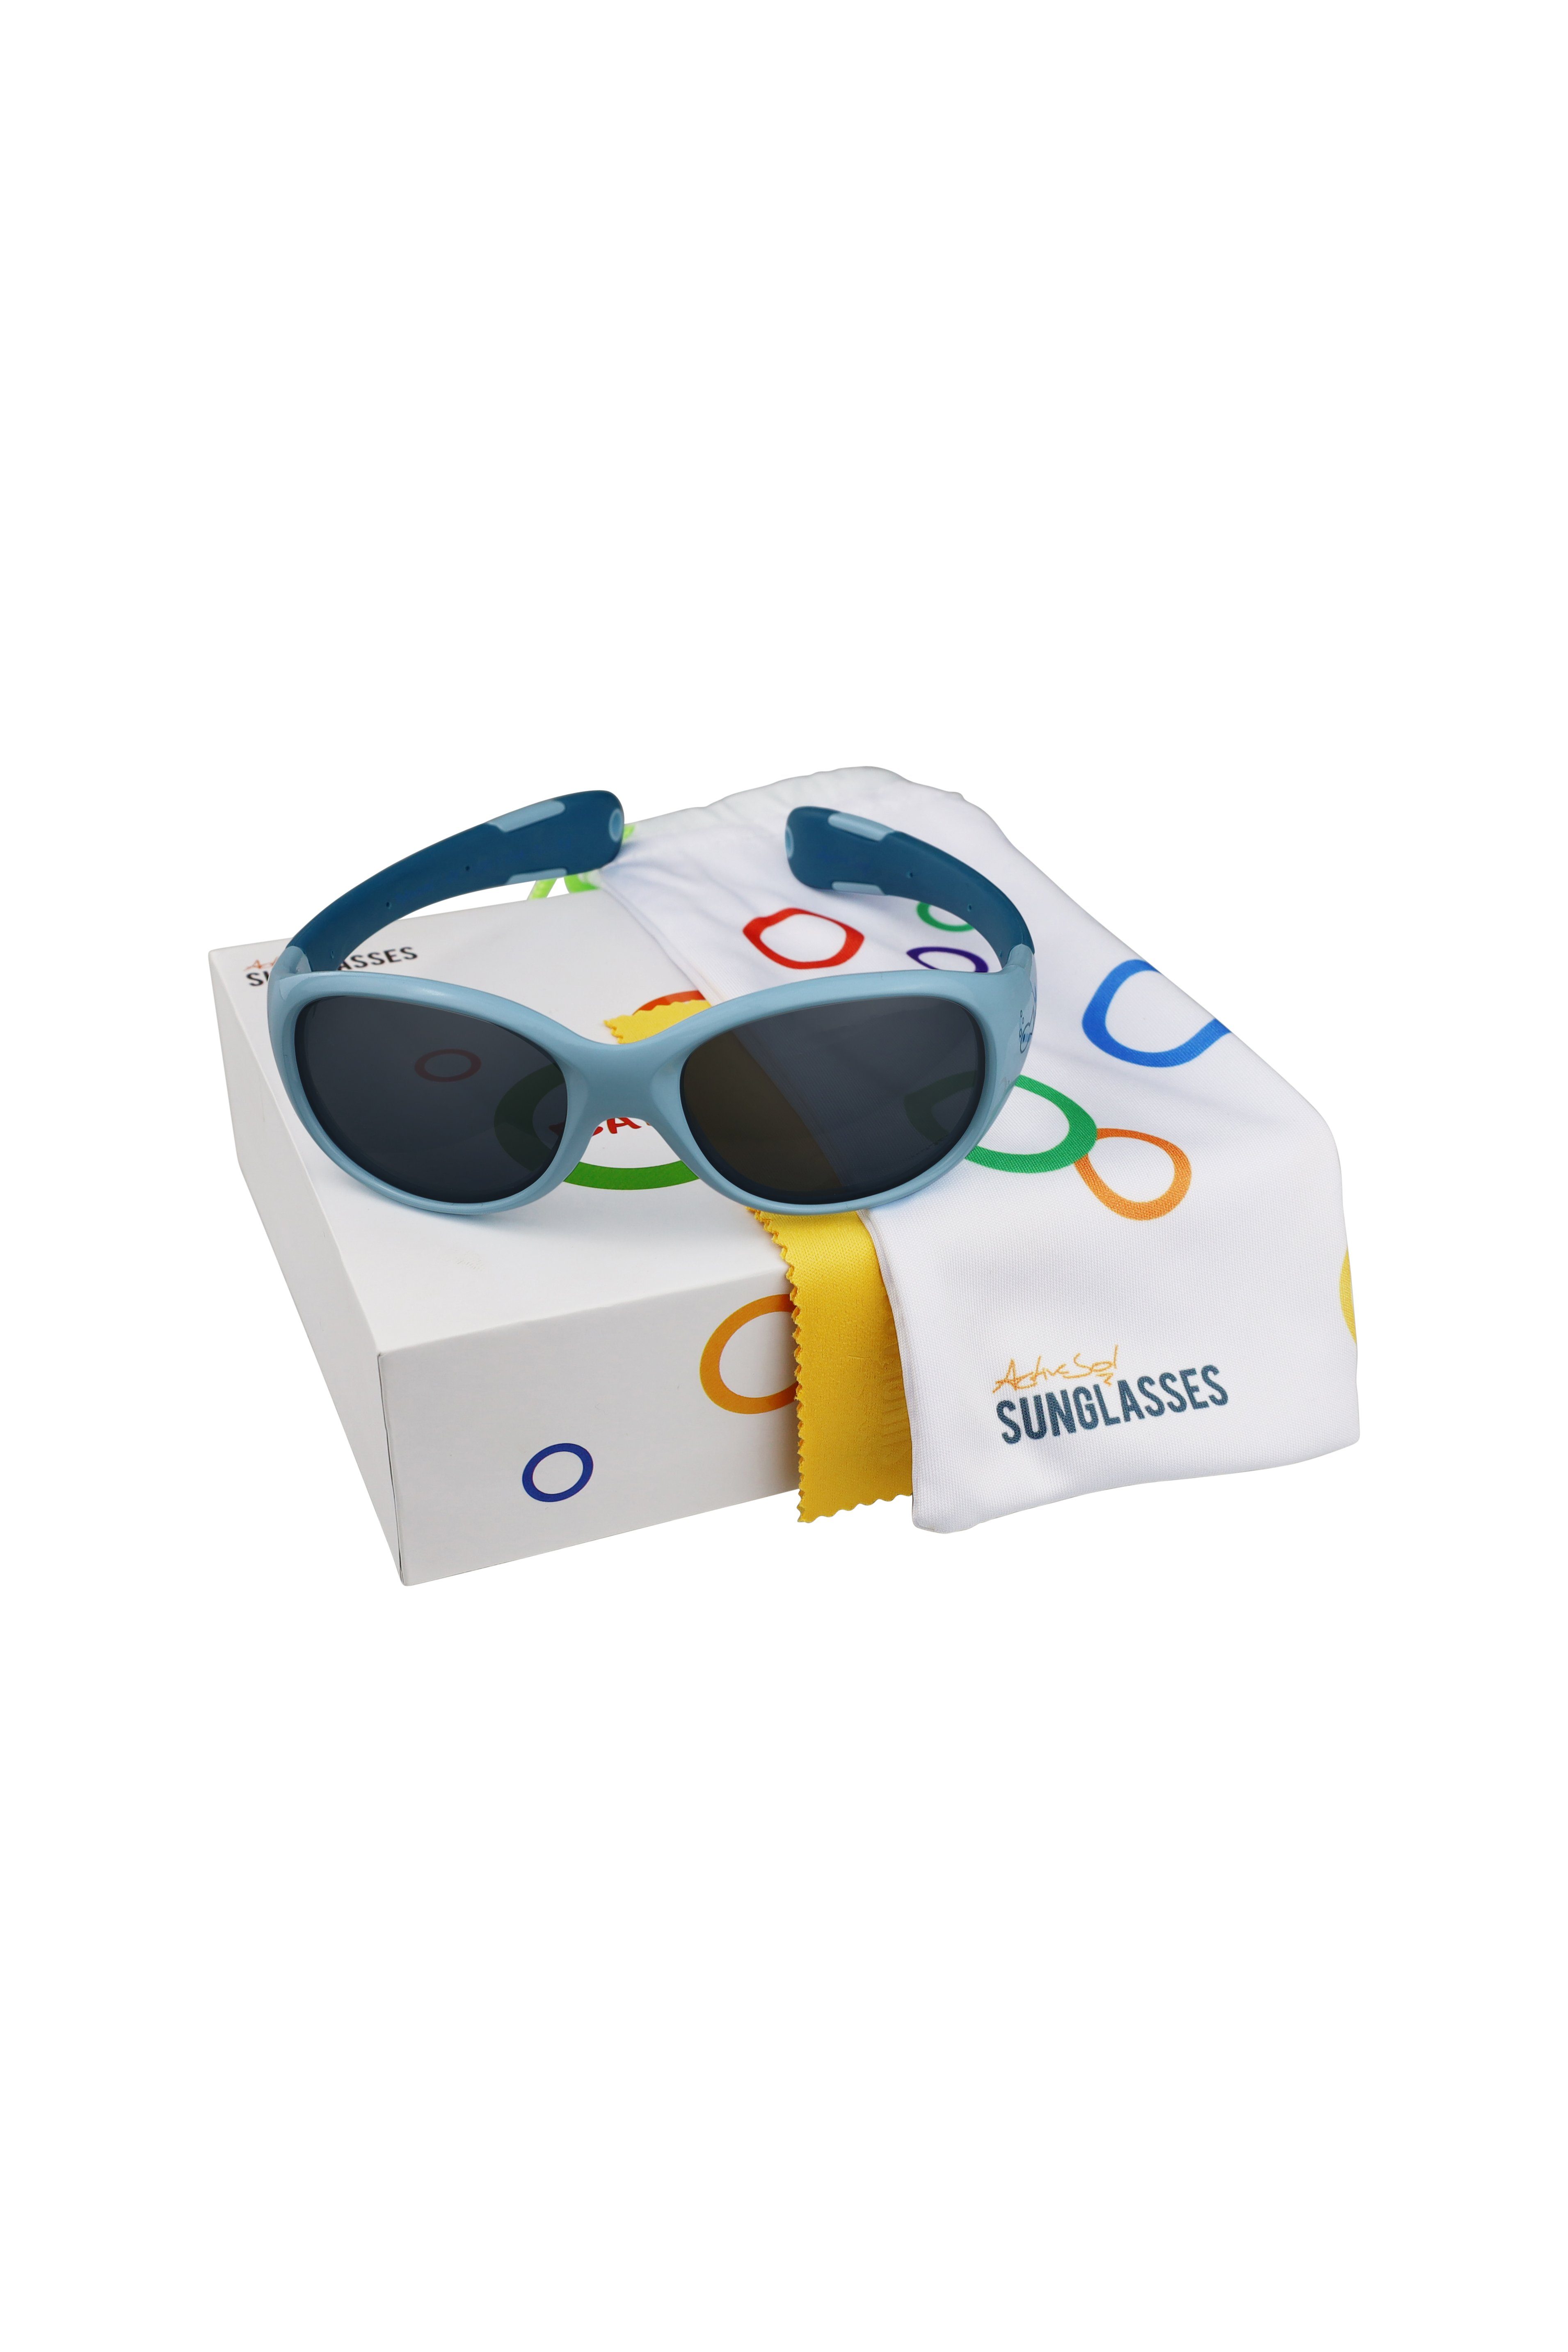 ActiveSol SUNGLASSES Sonnenbrille 0-2 Jungen Rocket Farben Jahre (in Baby Unzerstörbar bunten pfiffigen & mit Motiven) Flexibel & Sonnenbrille, & Mädchen